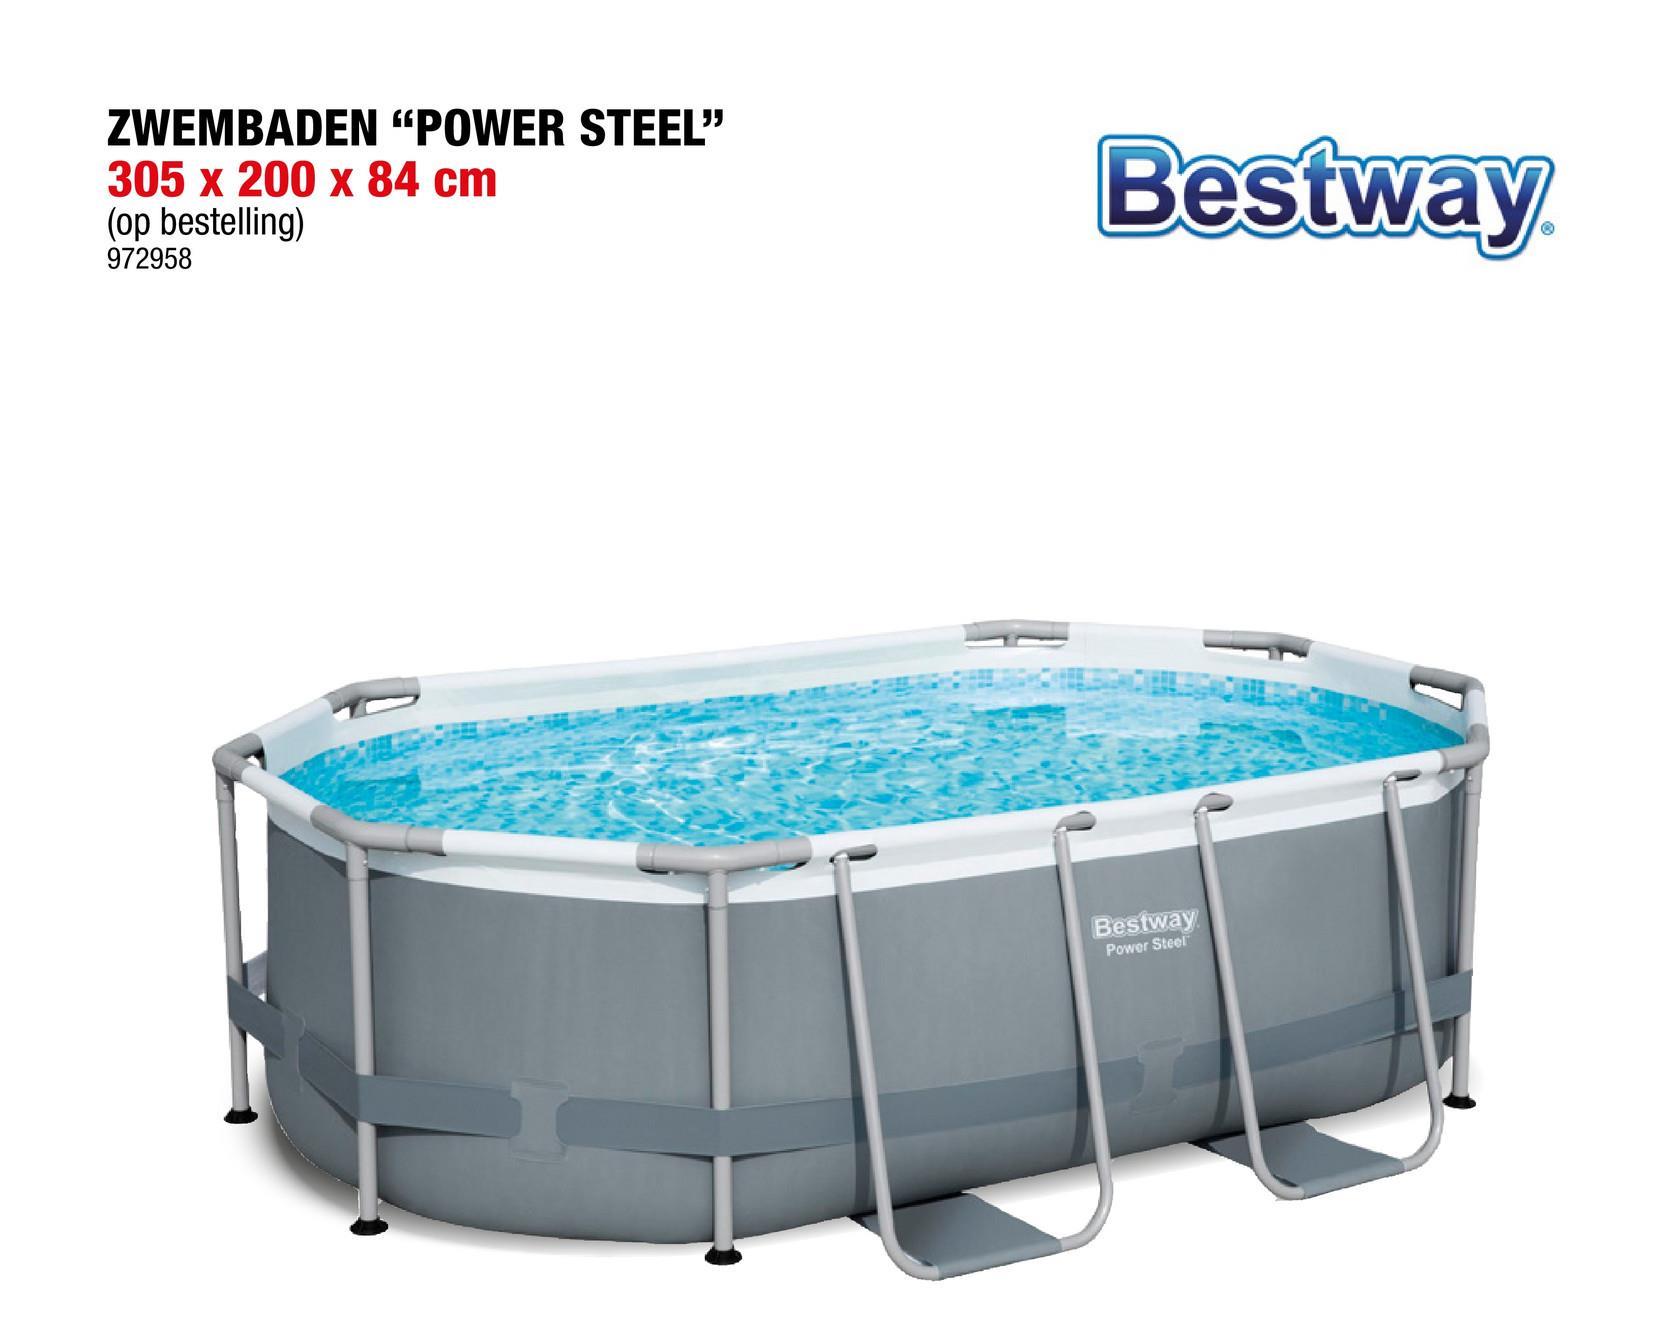 Bestway Power Steel zwembad 305x200x84 cm <p>Het Bestway Power Steel zwembad is perfect om samen met je familie te kunnen genieten van wat verkoeling tijdens de zomer. Het zwembad is uitgerust met een extra versterkt, corrosiebestendig stalen frame met het slimme Seal &ampLock systeem, met onderaan een 3-laags PVC band ter extra ondersteuning. </p><p>Het zwembad is zeer gemakkelijk te installeren. De installatie duurt meestal ongeveer 30 minuten met 3 personen, exclusief grondwerken en opvullen. </p>Duurzaam Tritech materiaal Chemconnect Dispenser voor een stabiel chloorgehalte en een goede chemische balans Moza&iuml;ek printReparatiepatch Cartridgefilterpomp 1,2 m³;/u 220-240 V